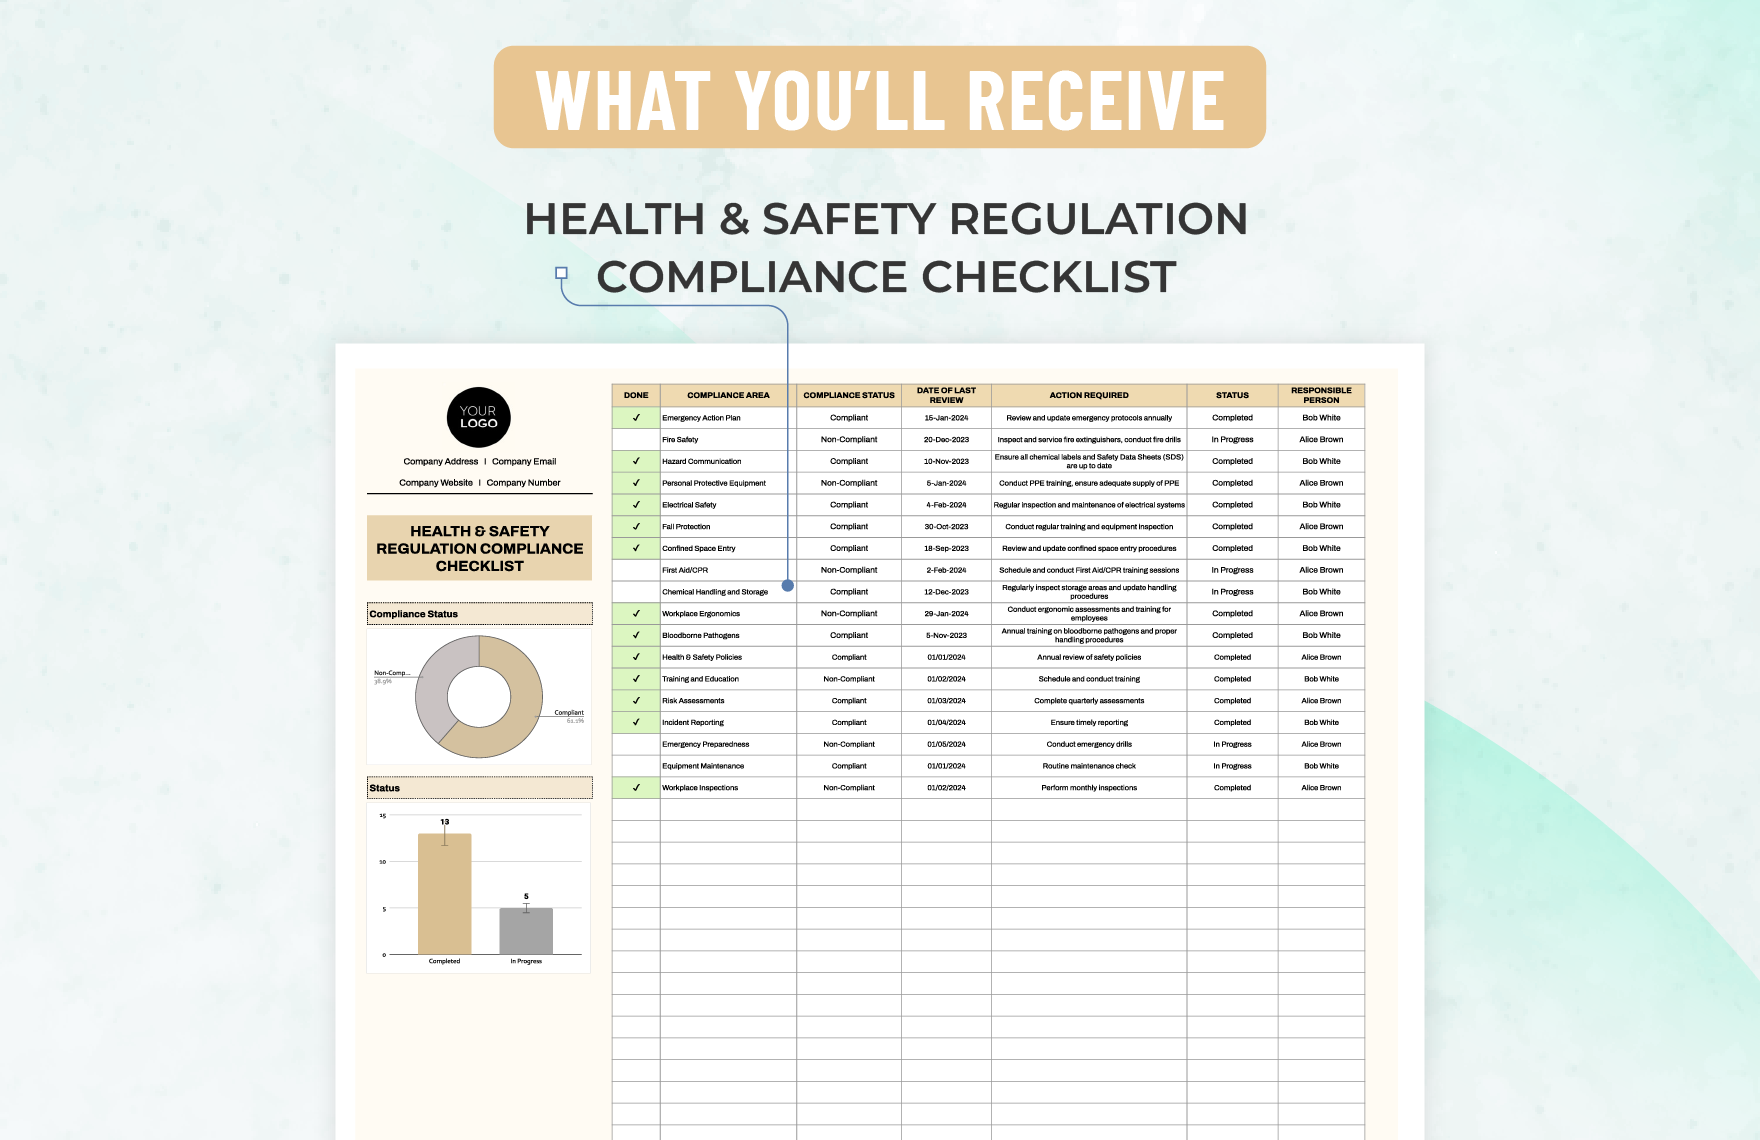 Health & Safety Regulation Compliance Checklist Template